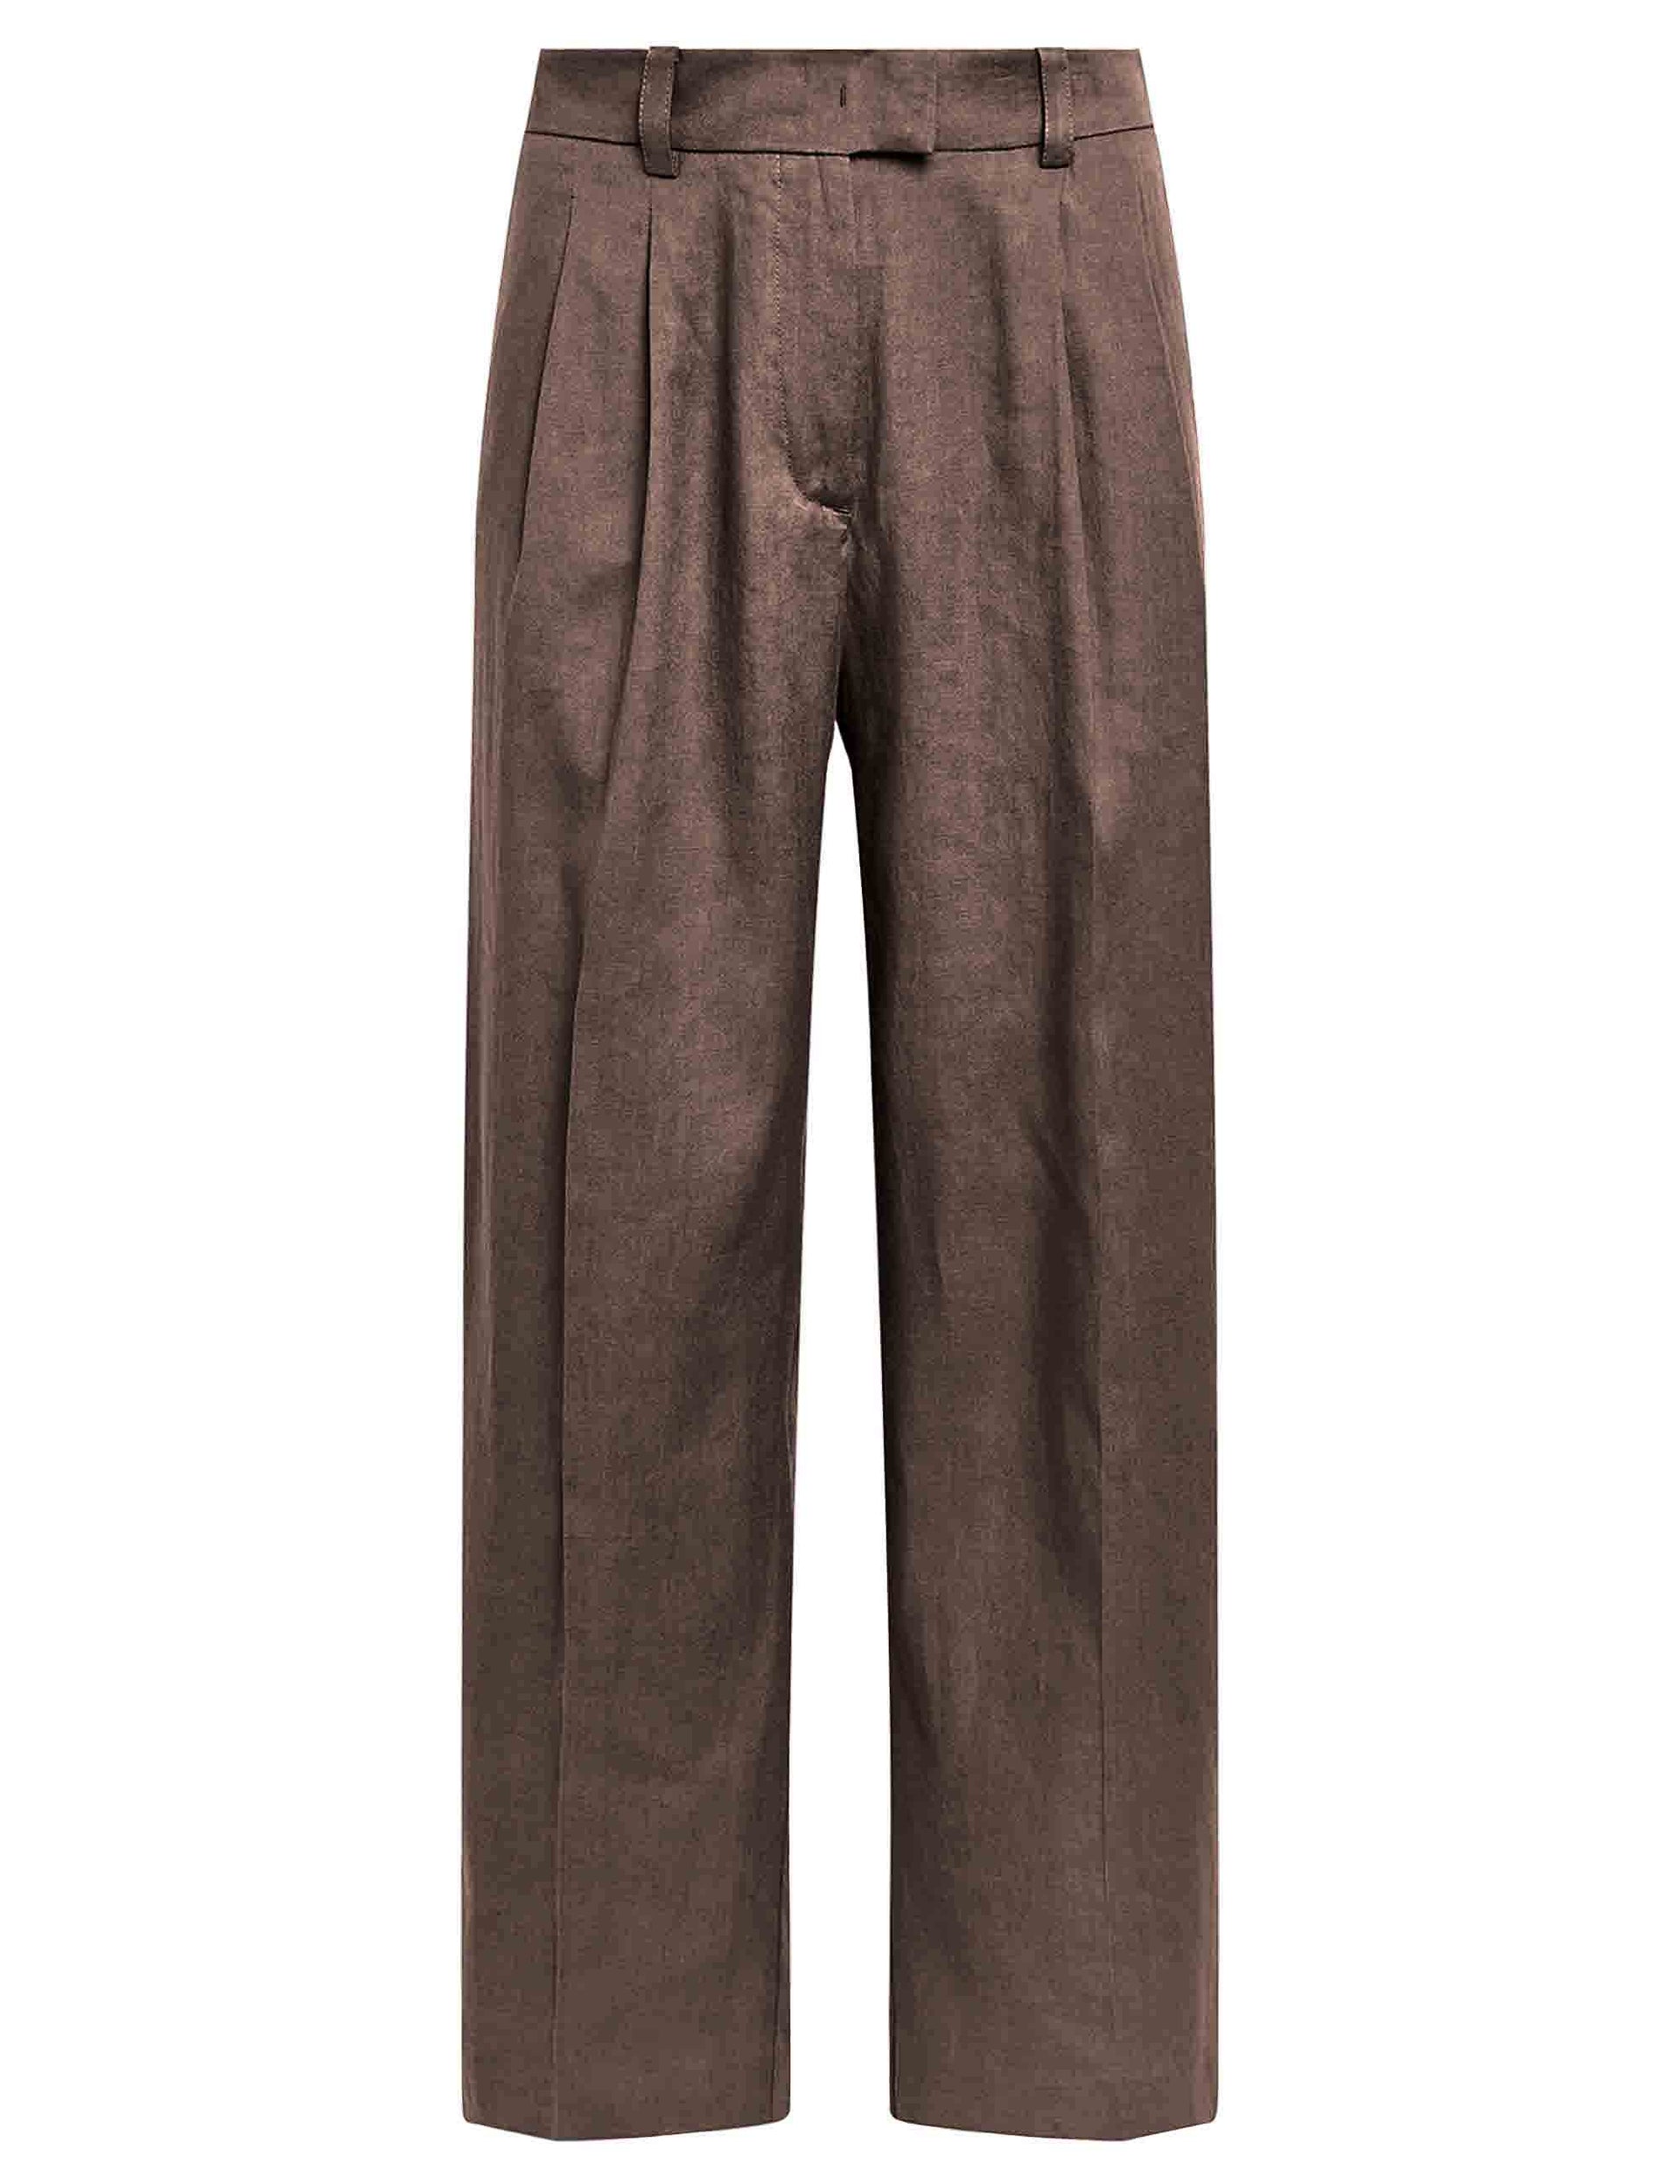 Pantaloni donna Linen in misto lino e cotone marrone